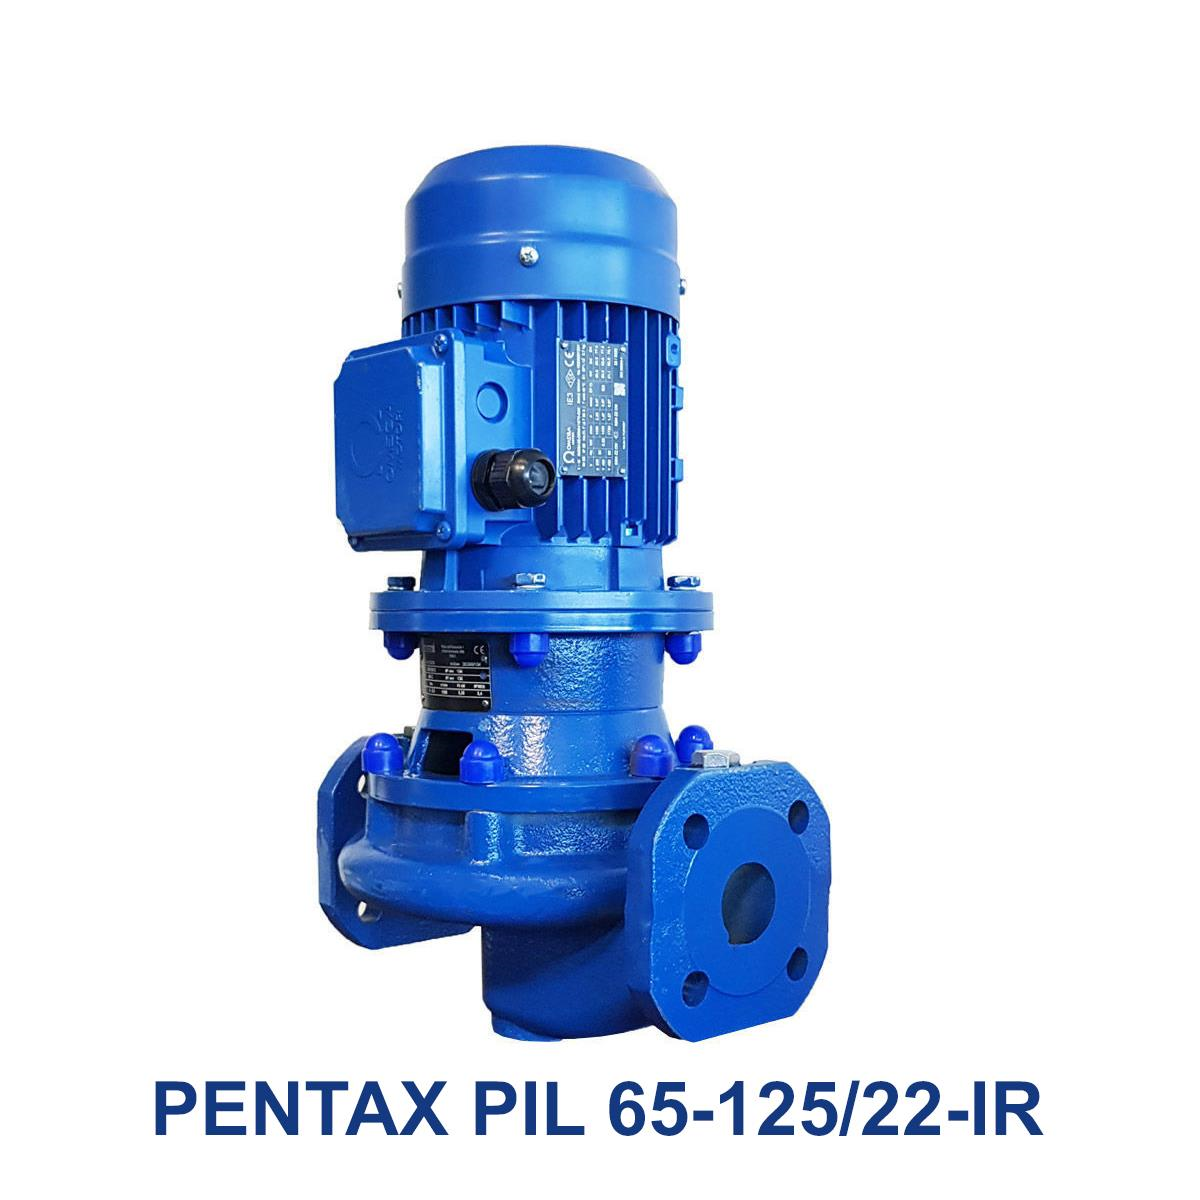 PENTAX-PIL-65-125-22-IR